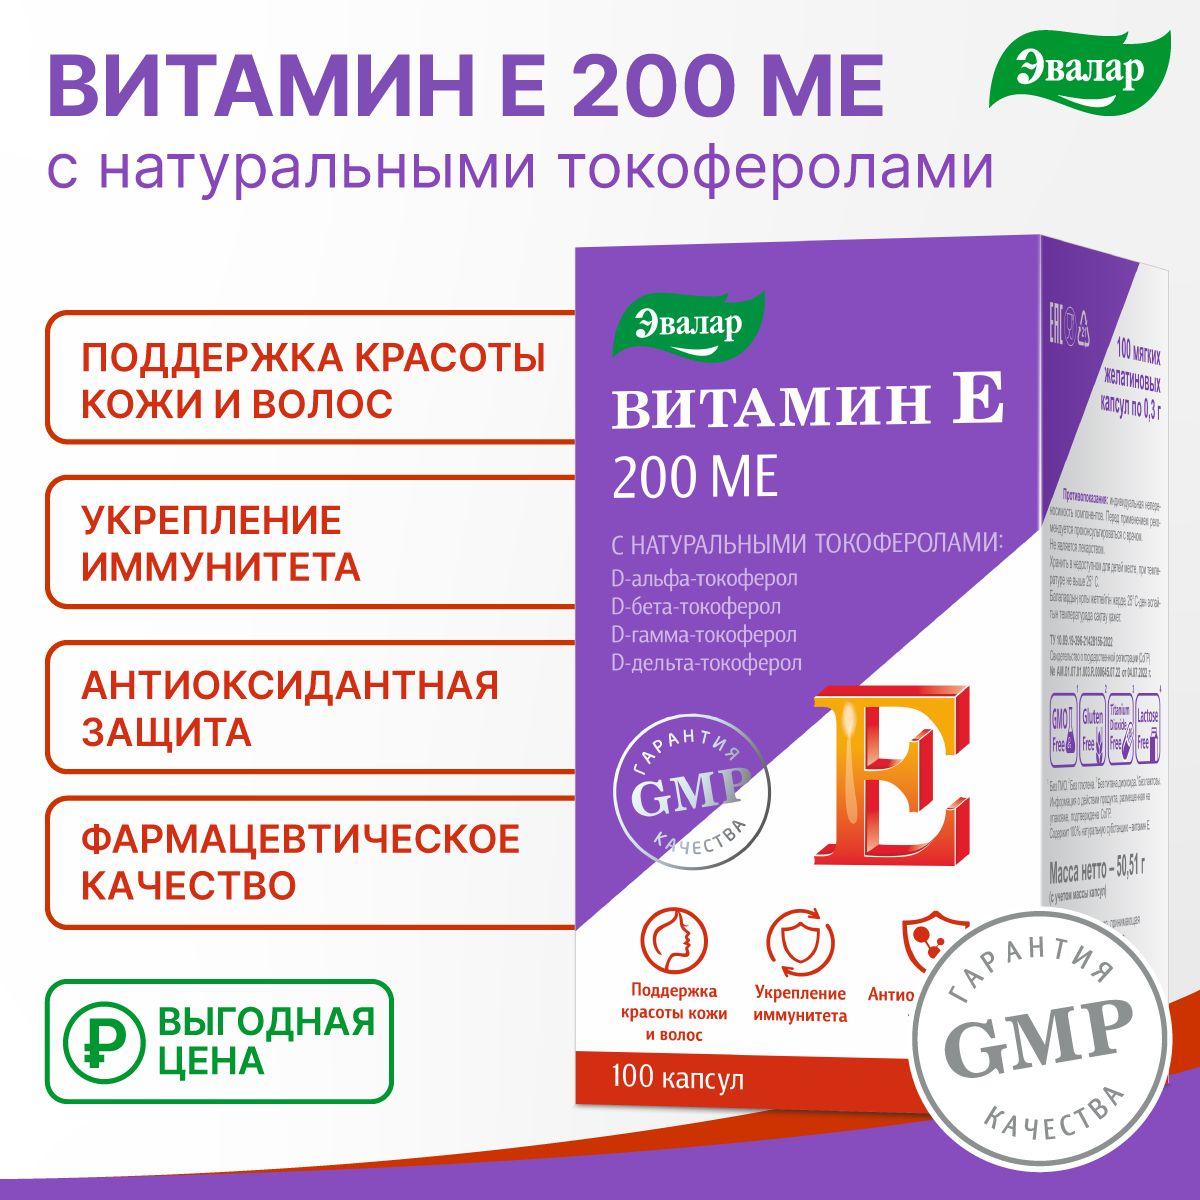 Витамин Е, 200 МЕ, с натуральными токоферолами,Эвалар, мягкие желатиновые капсулы 100 штук по 0,3 г